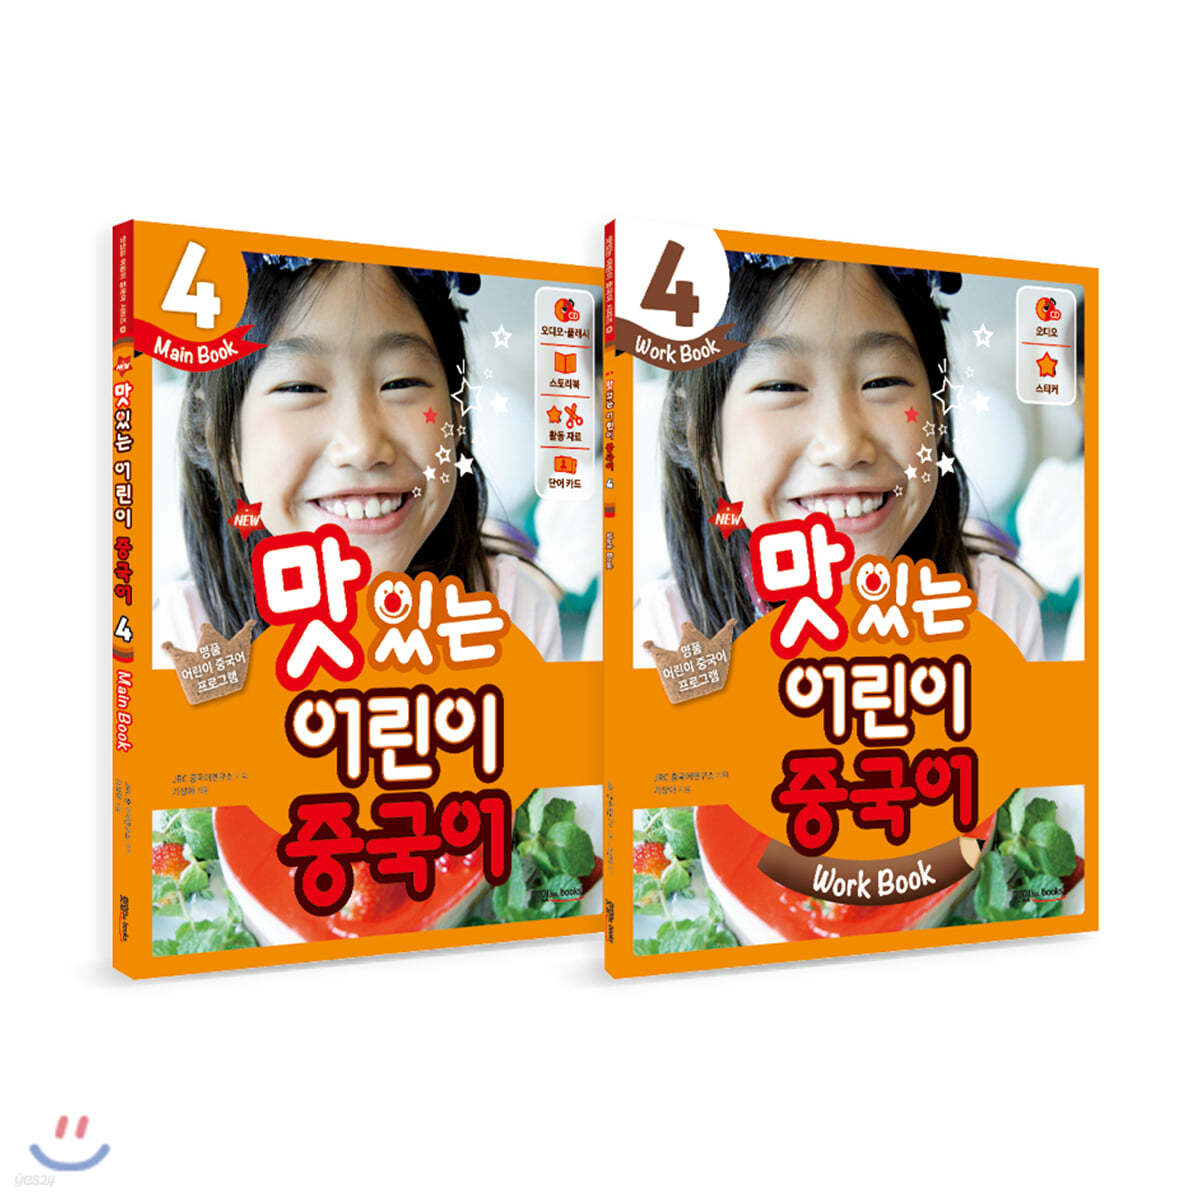 NEW 맛있는 어린이 중국어 4 메인북 + 워크북